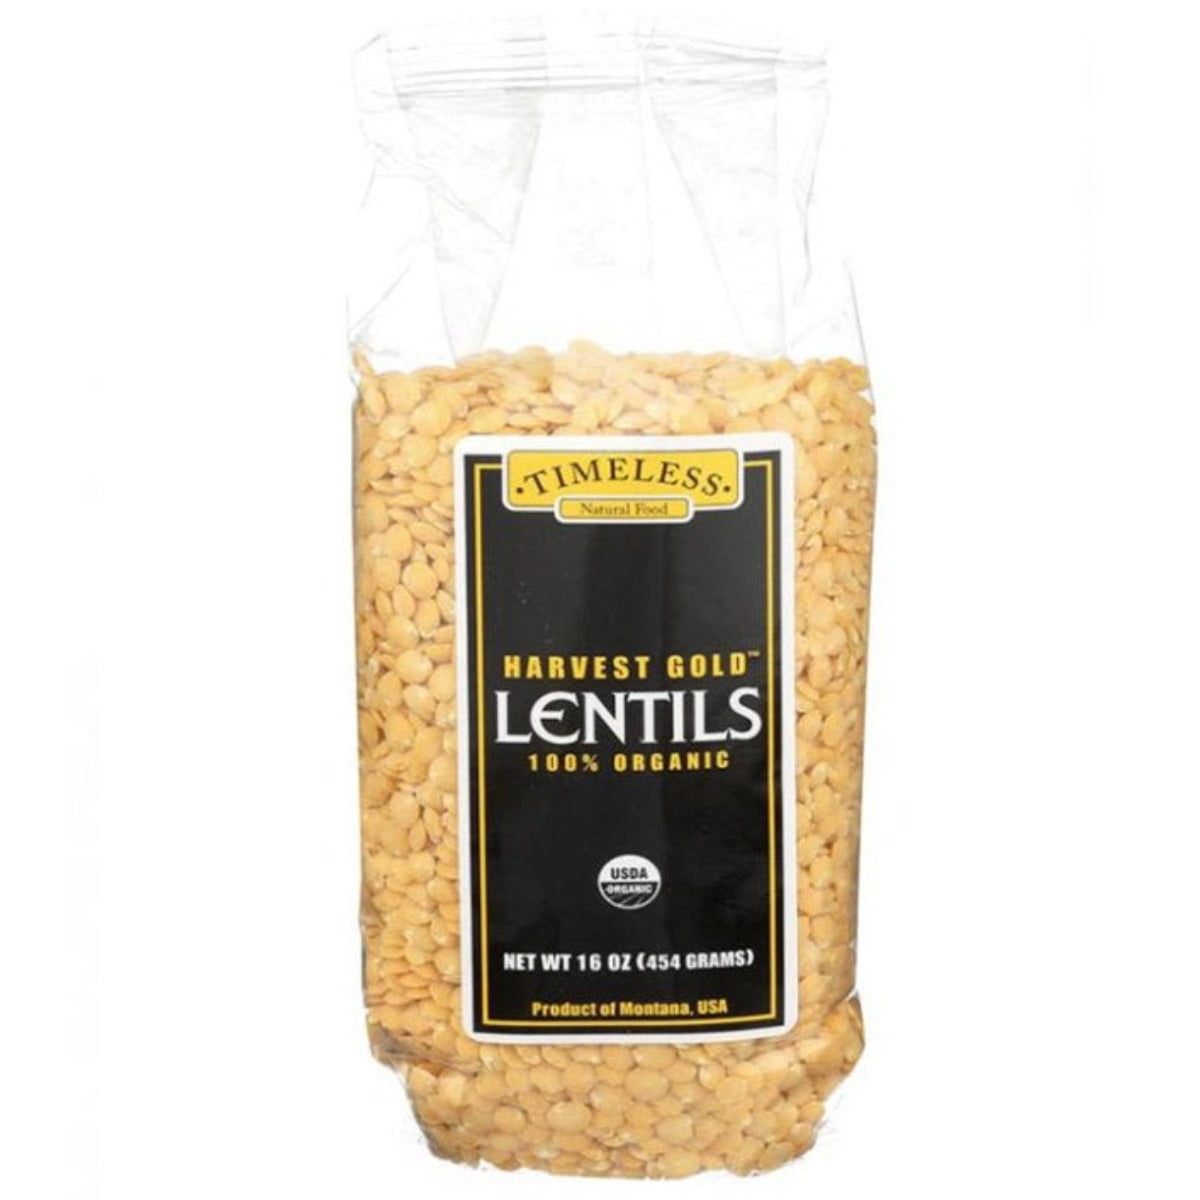 Lentils - Harvest Gold - Organic - Timeless Natural Food